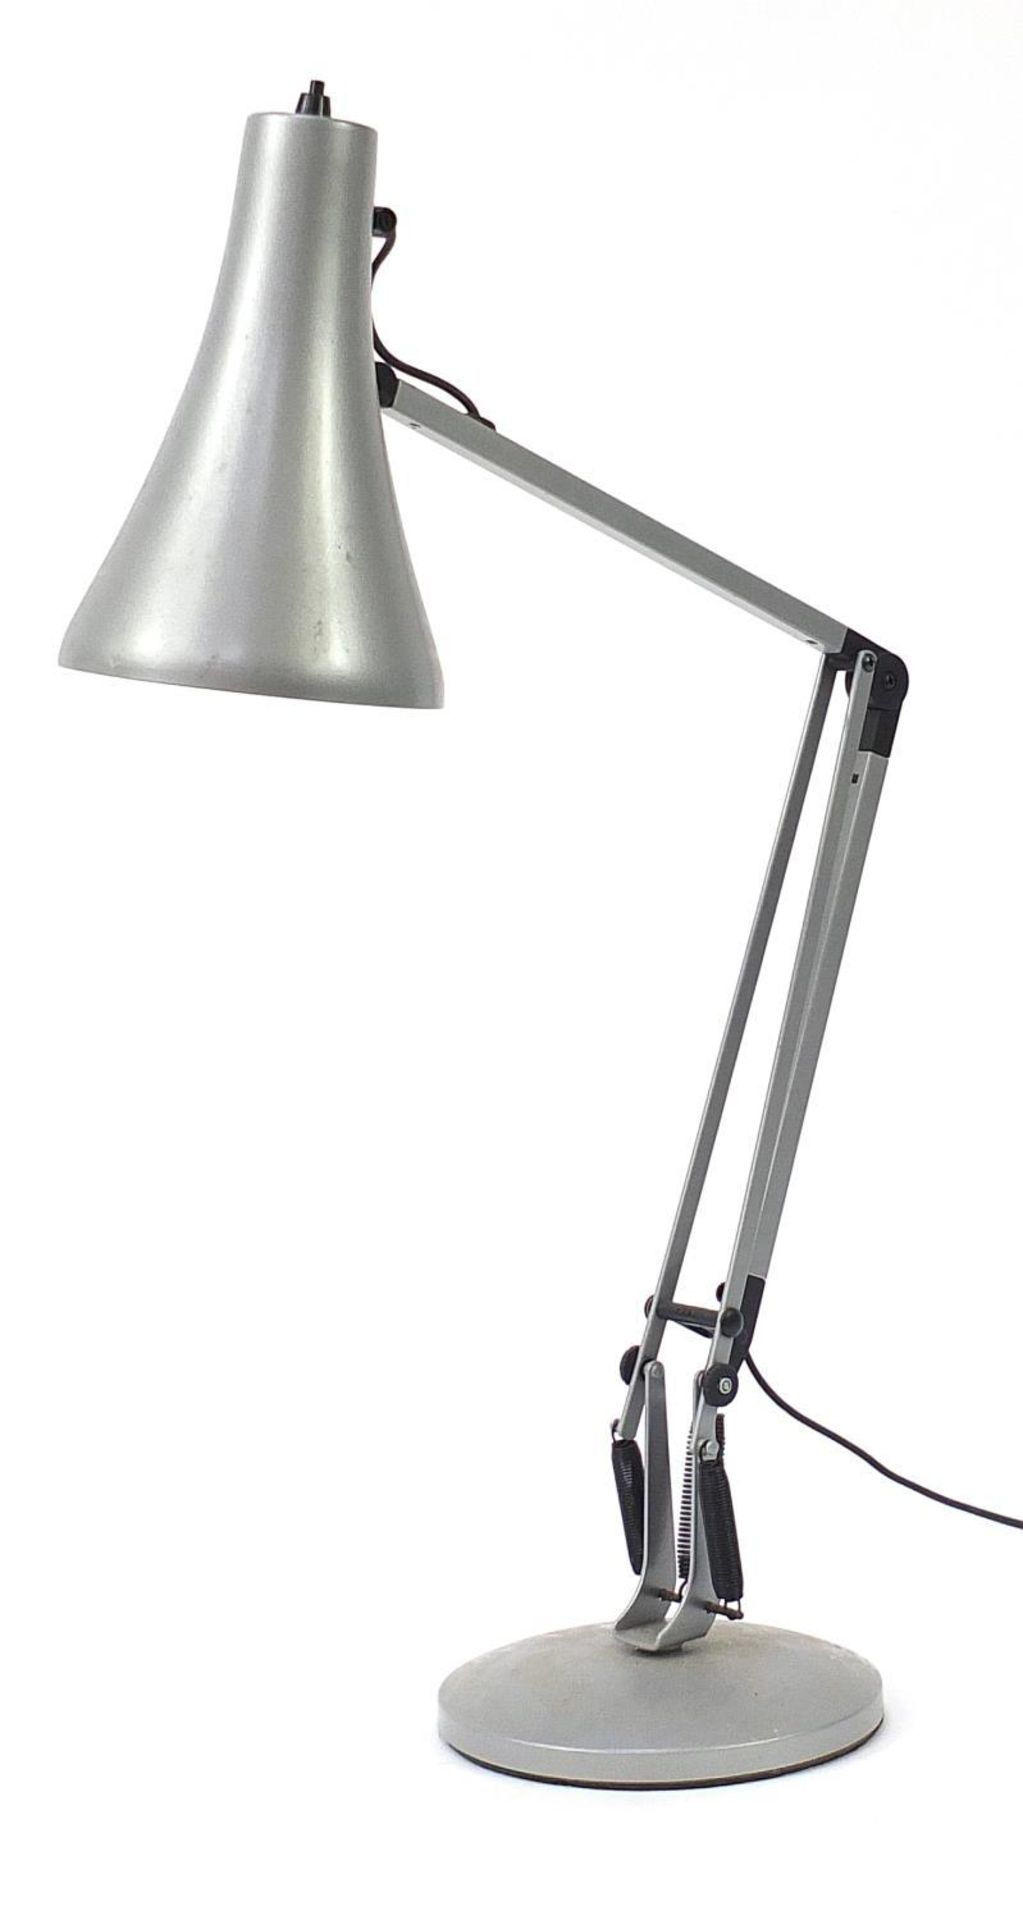 Vintage Anglepoise Lighting anglepoise lamp :